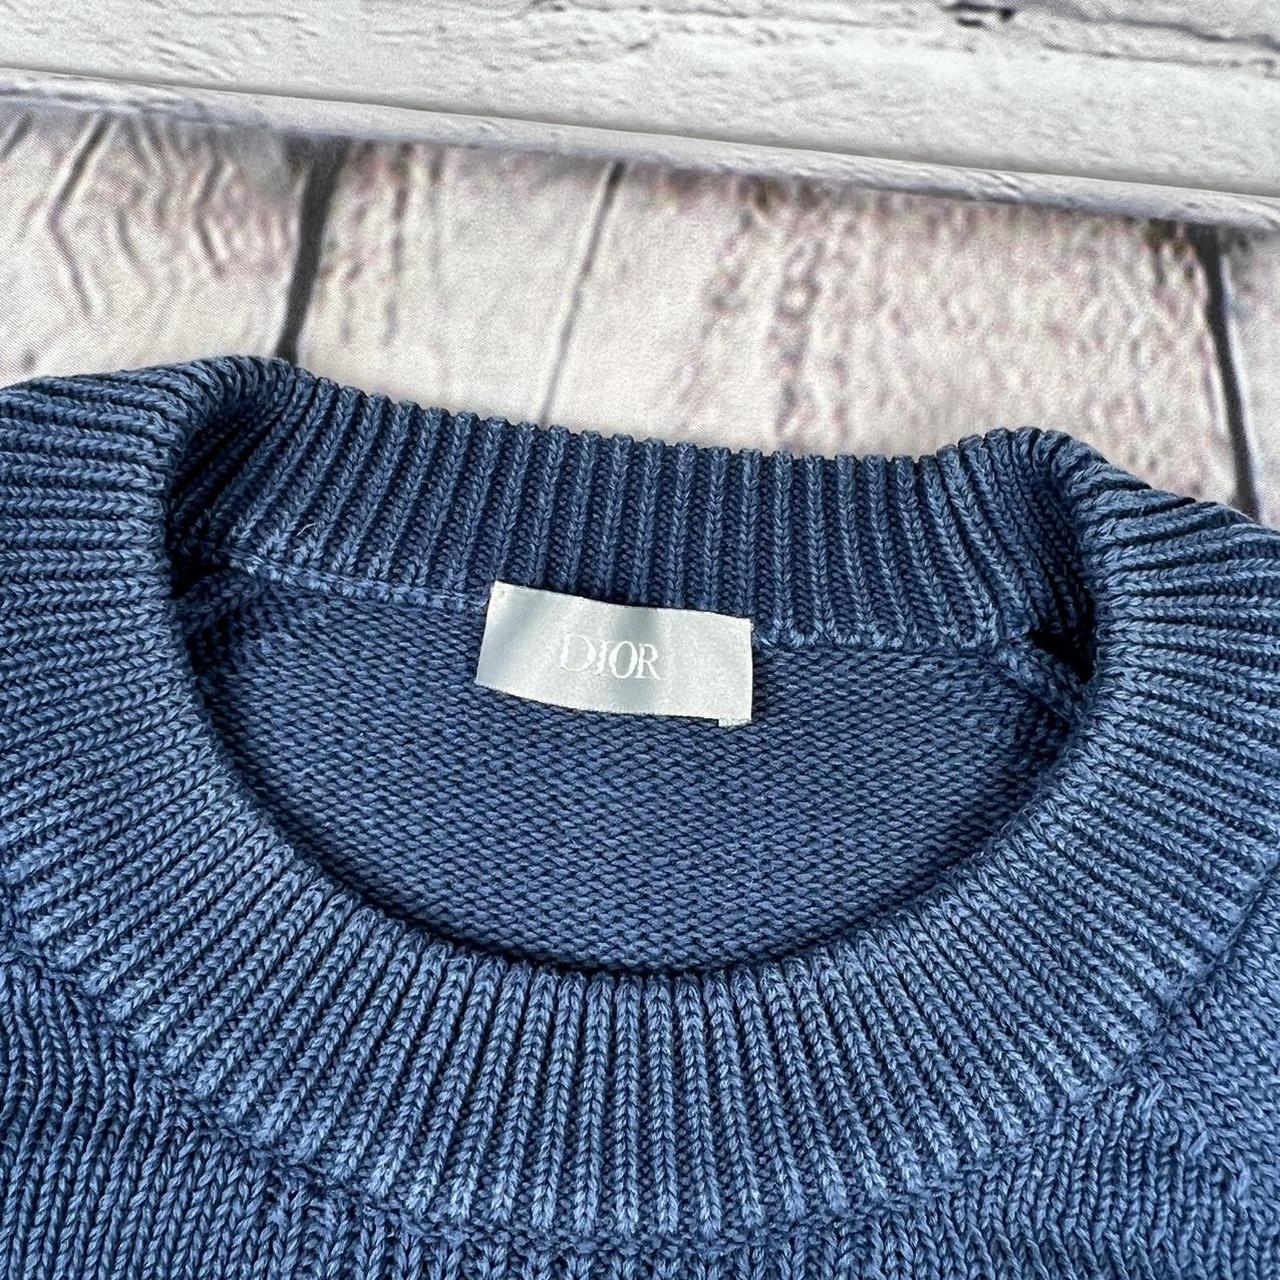 Men’s Christian Dior Oblique jumper / sweatshirt... - Depop